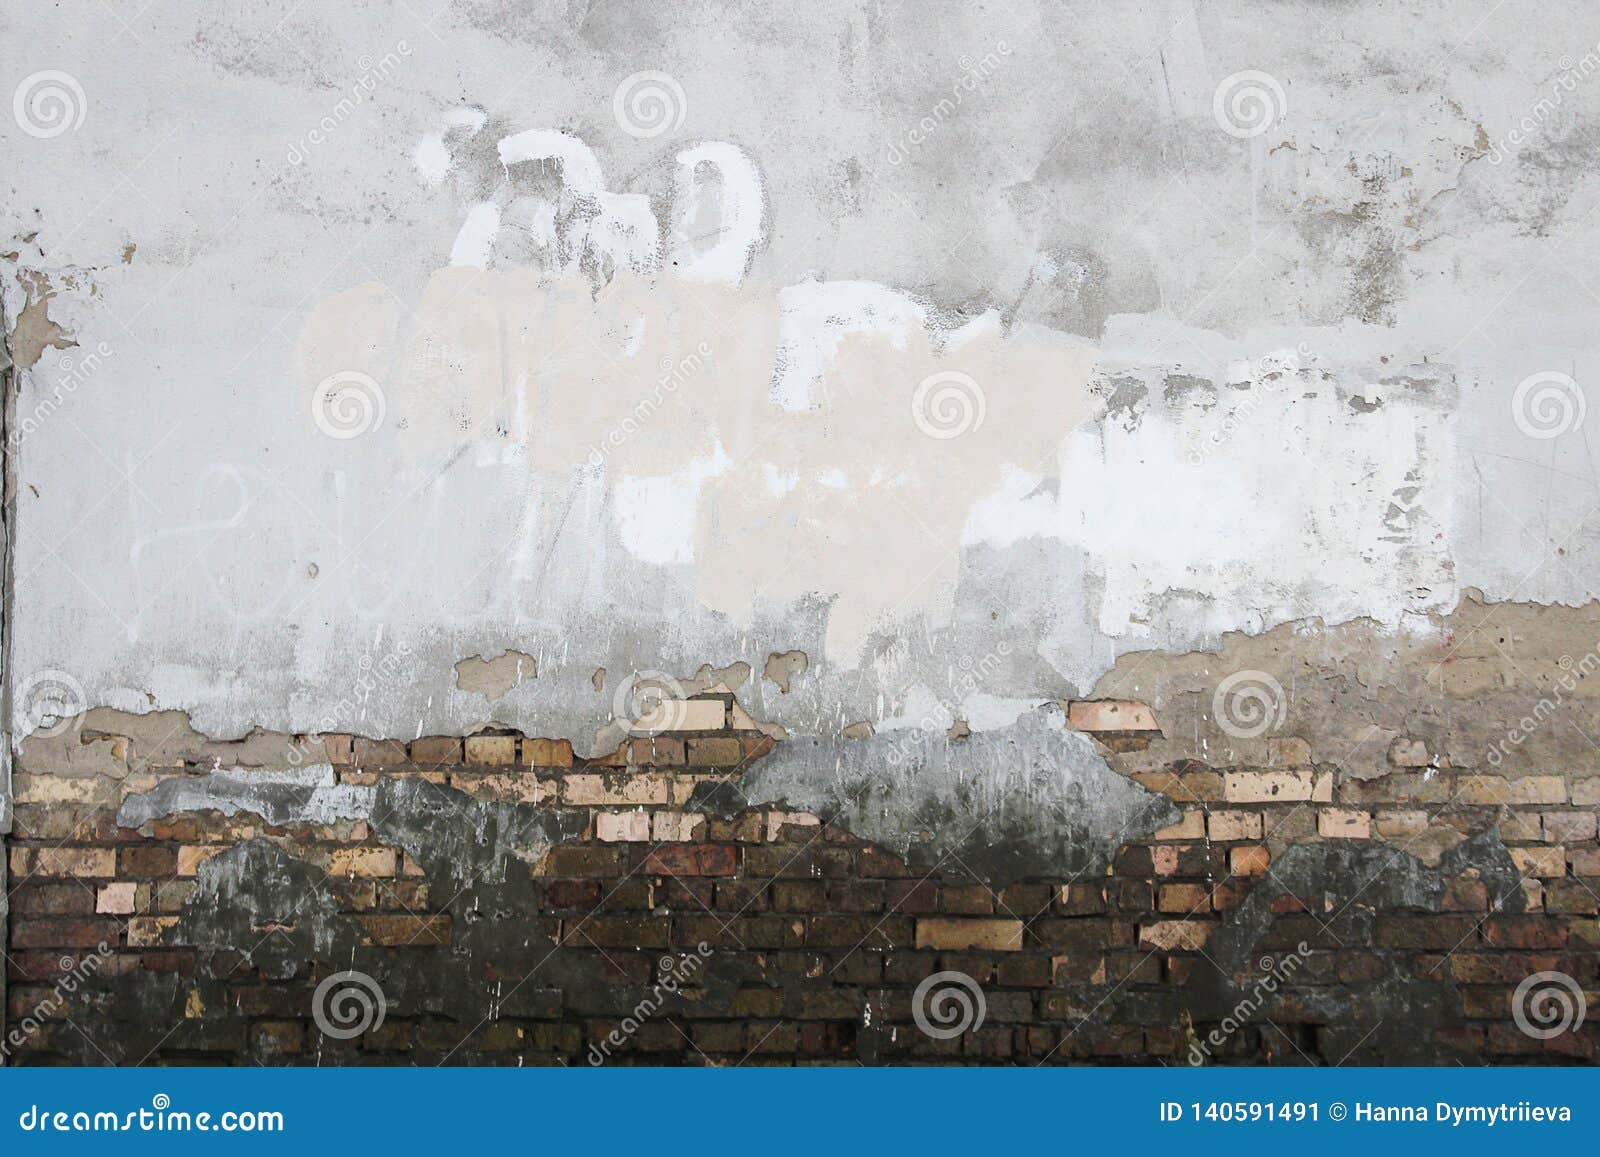 ÃÂ¡oncrete wall plaster bricks dirt texture background